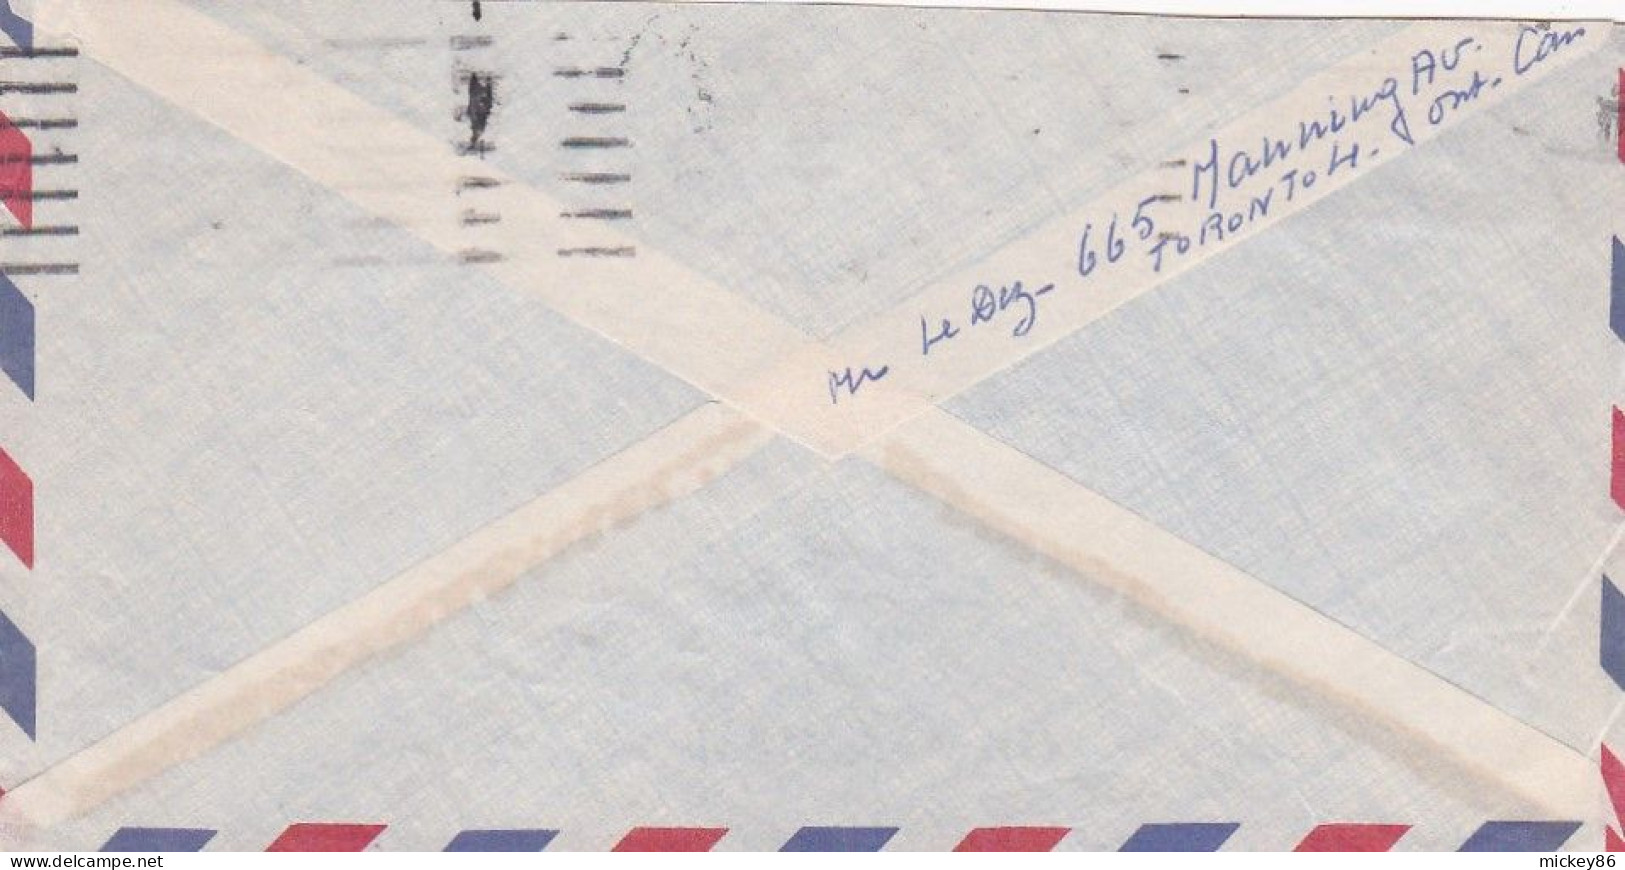 Canada-Lettre De TORONTO à POITIERS (France)-timbre Seul Sur Lettre ...cachet  22-DEC 1960  " AIR PARCEL POST FOR SPEED" - Brieven En Documenten